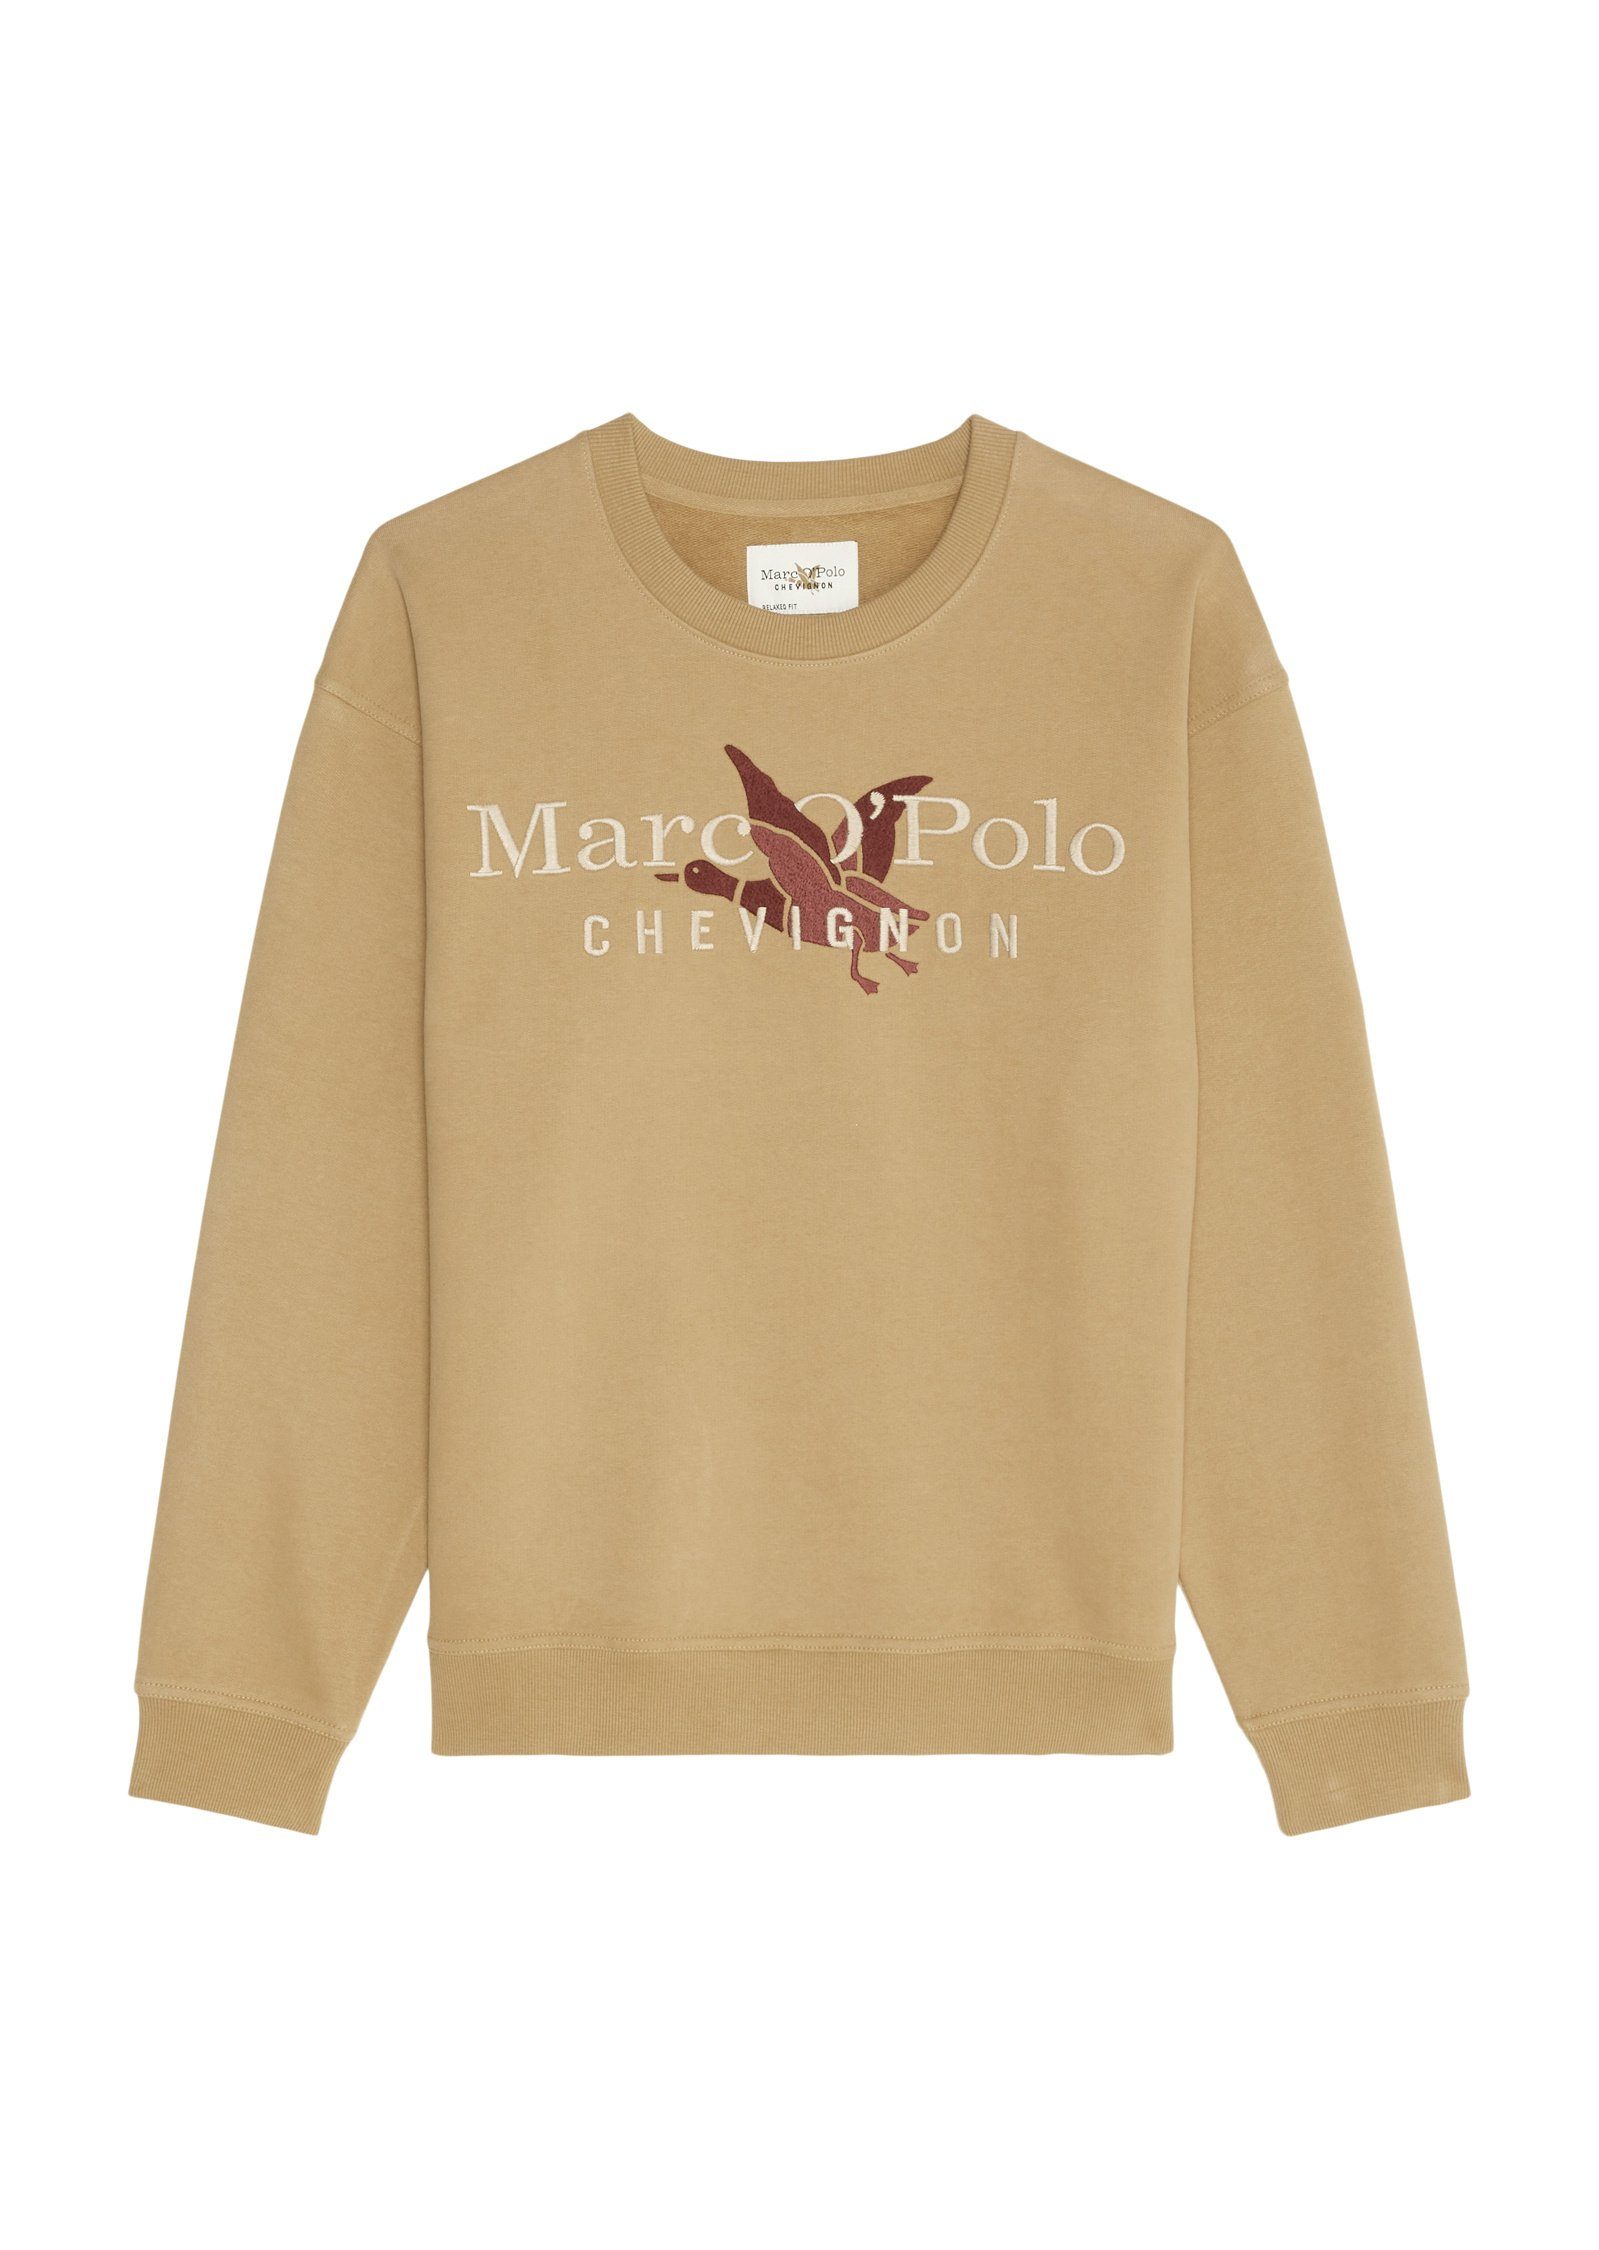 Sweatshirt O'Polo aus Bio-Baumwolle Marc reiner braun